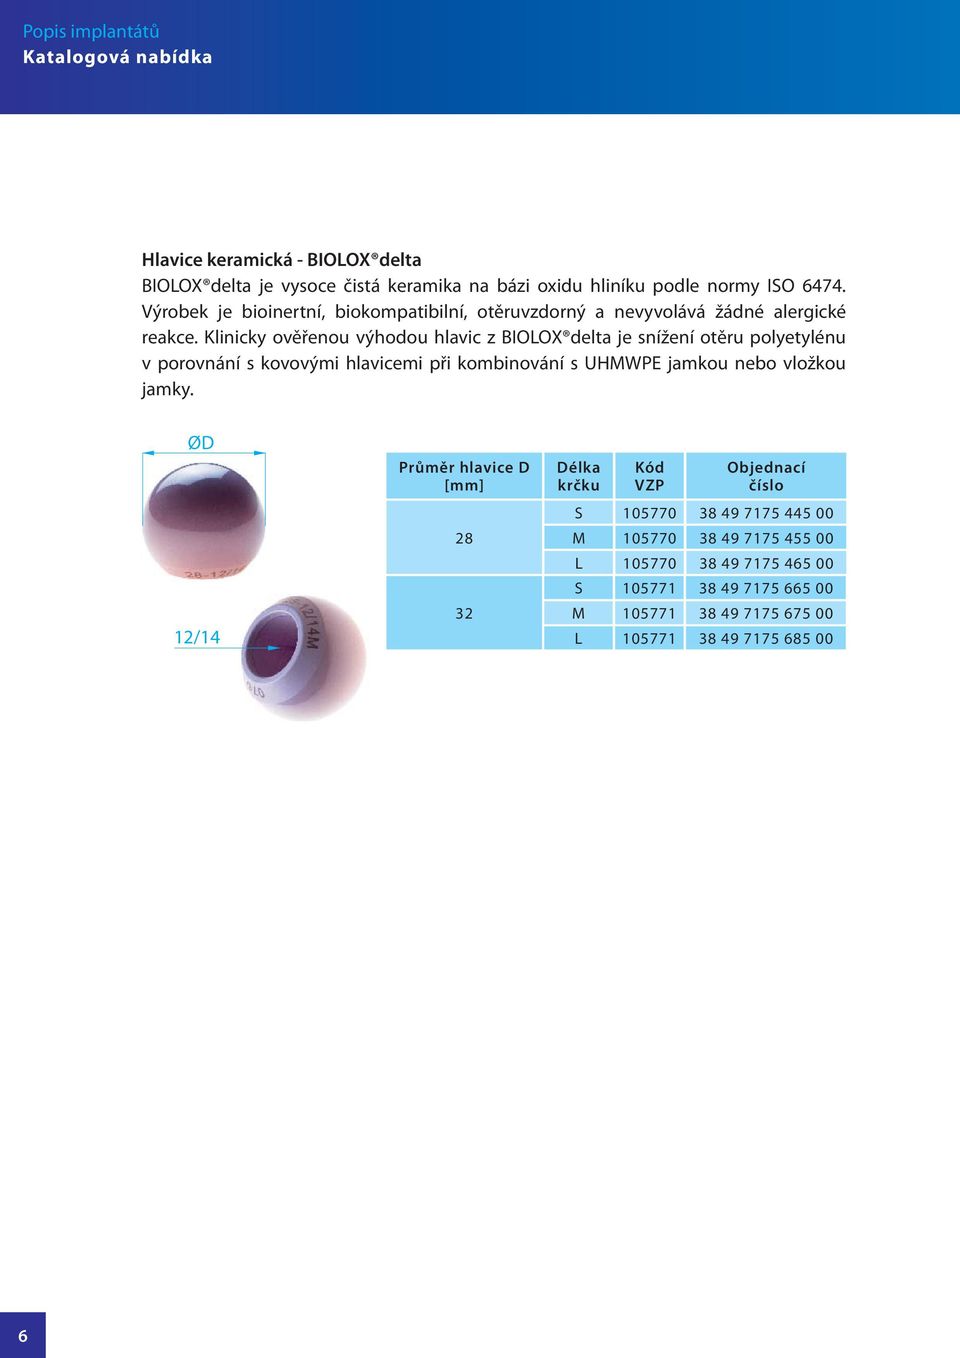 Klinicky ověřenou výhodou hlavic z BIOLOX delta je snížení otěru polyetylénu v porovnání s kovovými hlavicemi při kombinování s UHMWPE jamkou